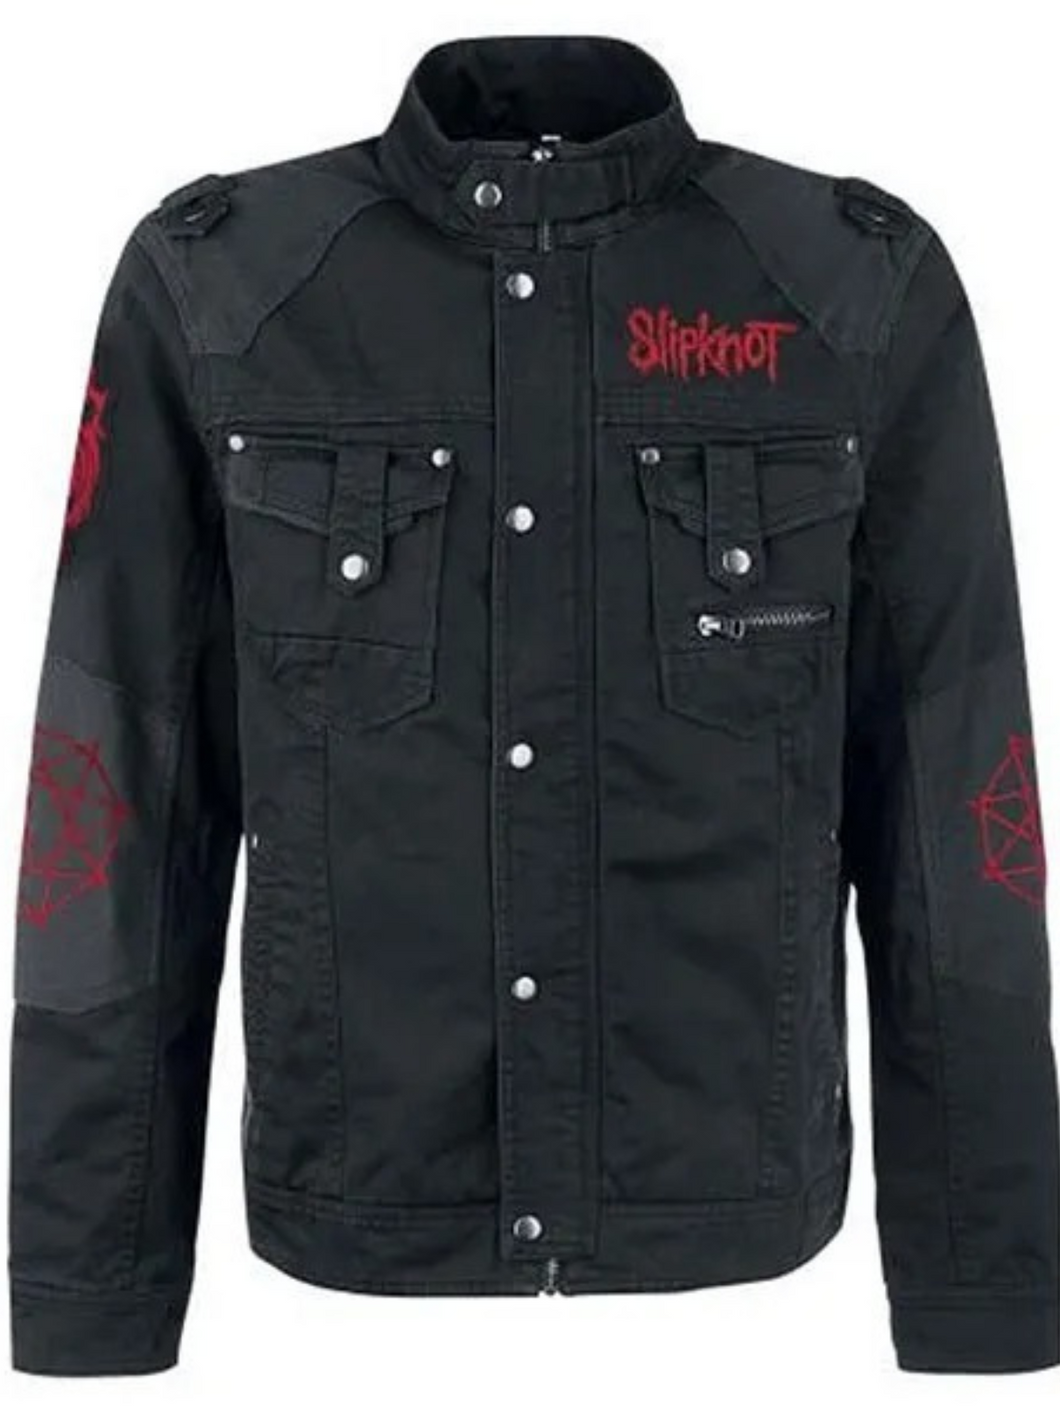 Corey Taylor Slipknot Black Cotton Jacket